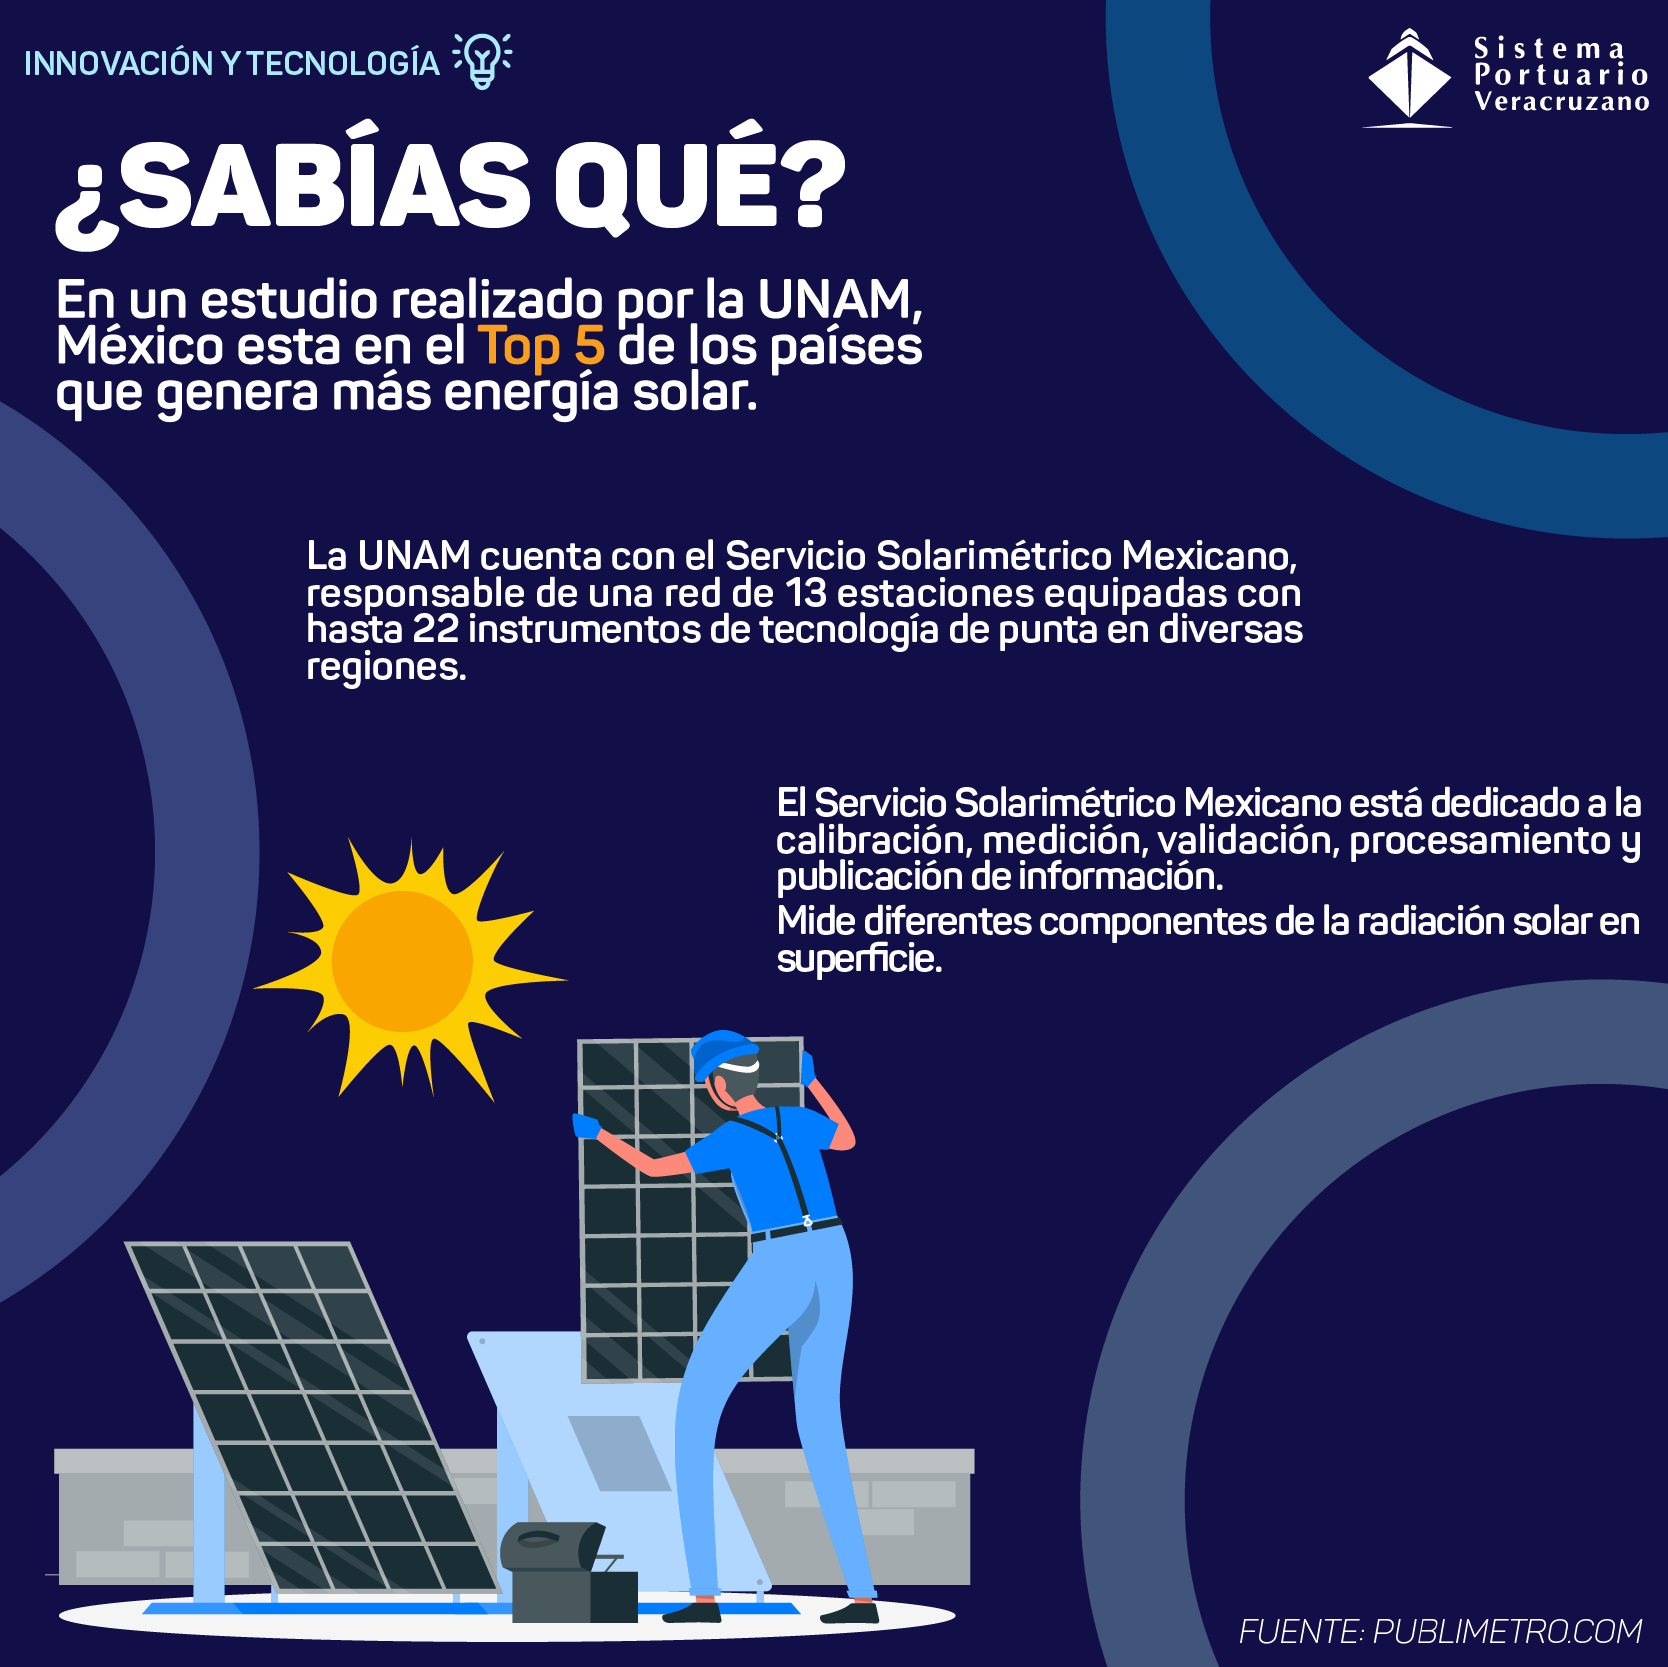 ¿Sabías qué?
México esta en el Top 5 de los países que genera más energía solar.